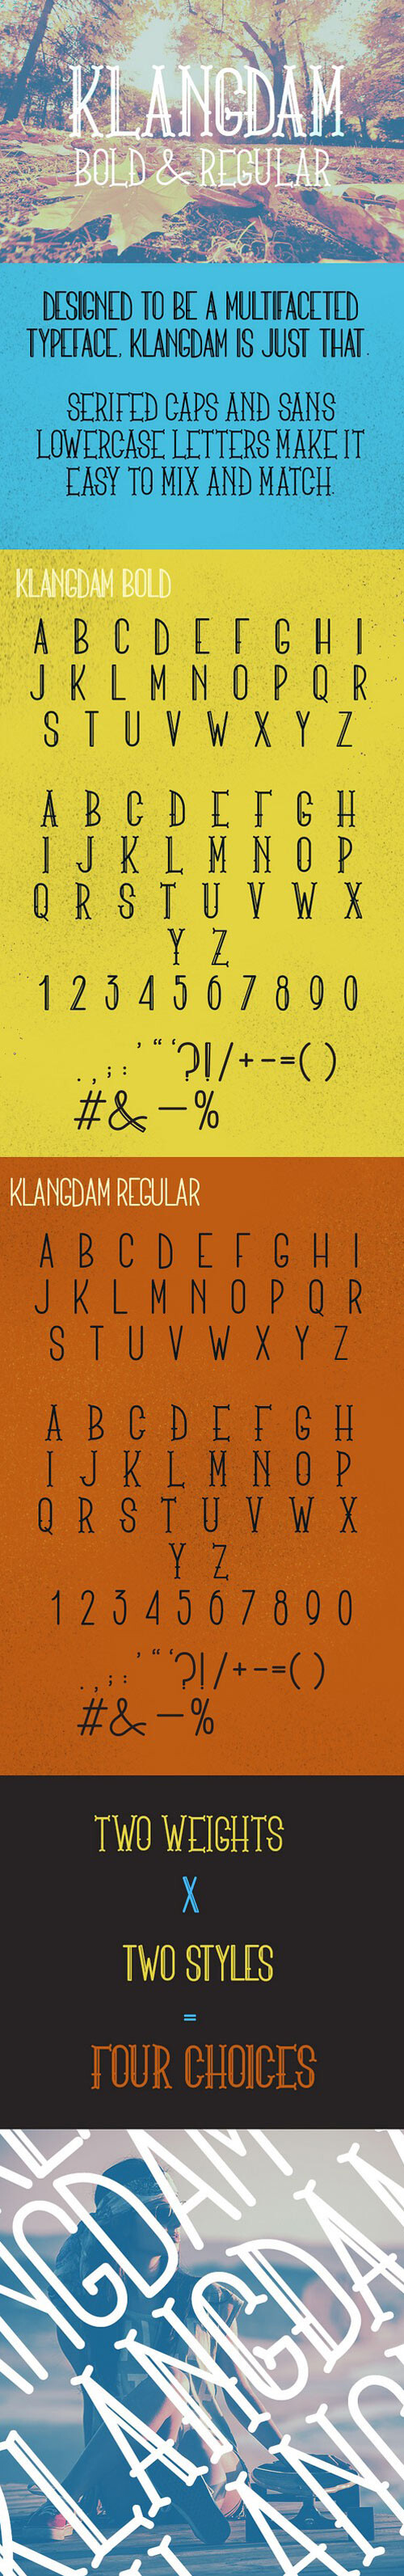 Klangdam可爱艺术设计字体